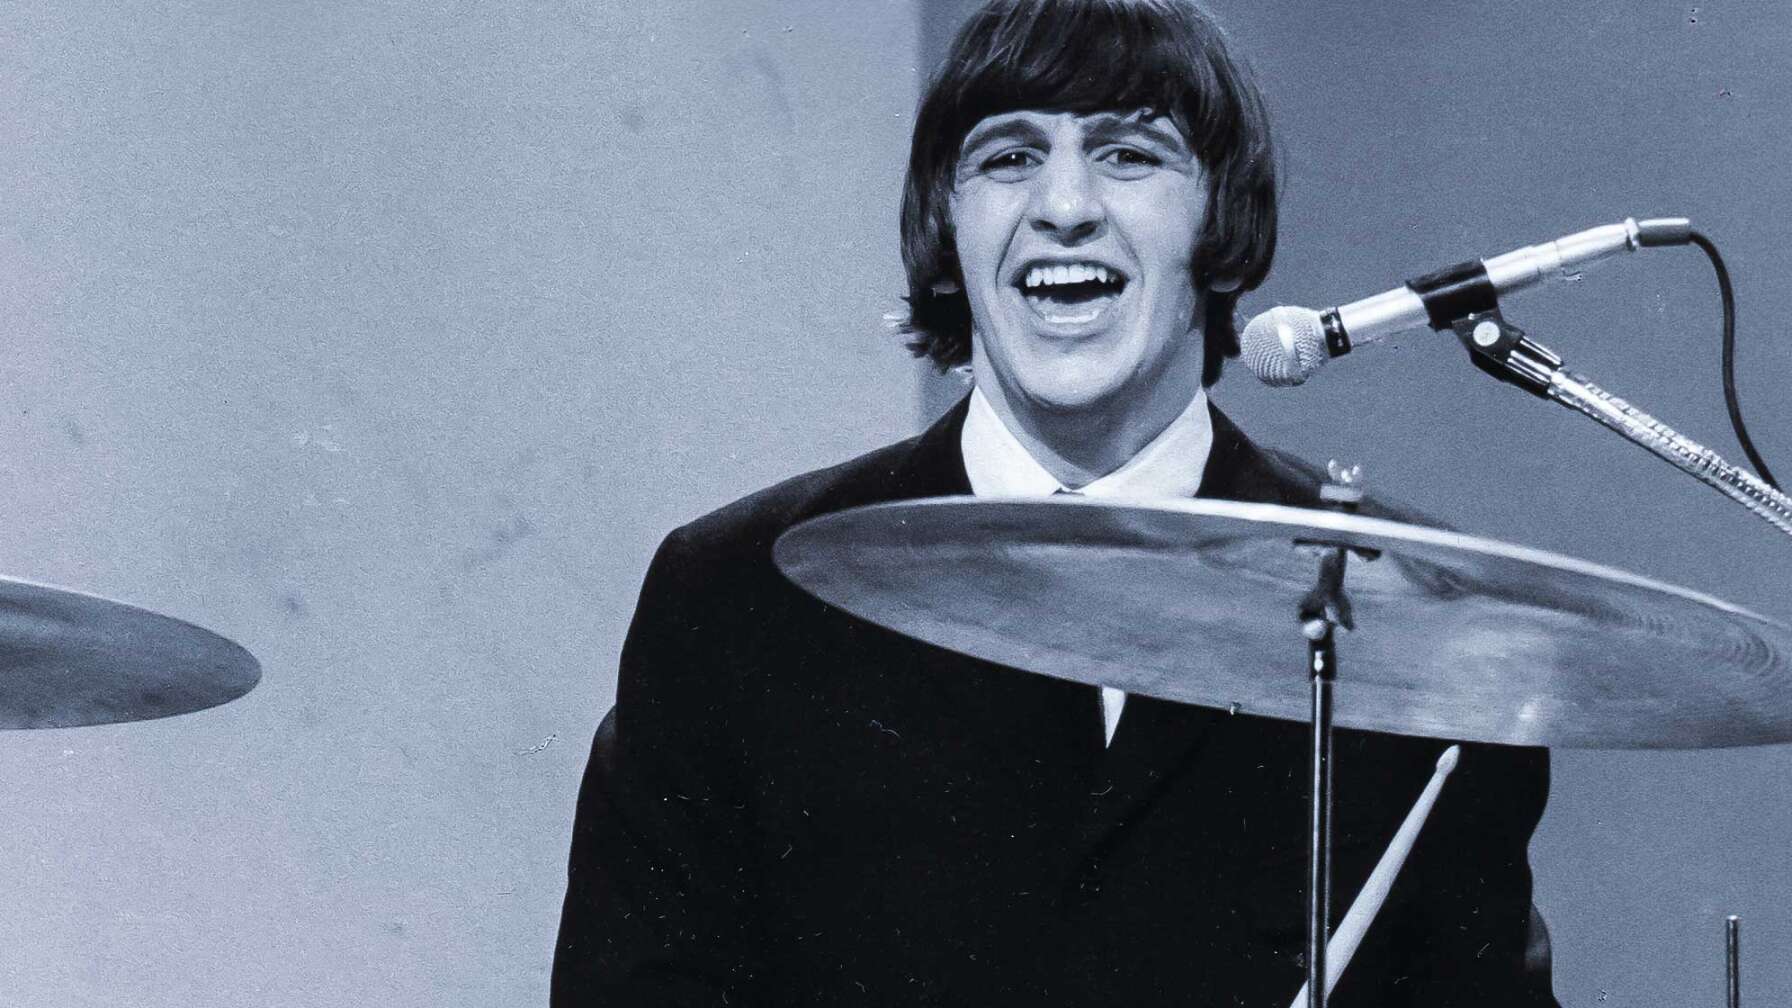 Drummer Ringo Starr am Schlagzeug der Beatles.